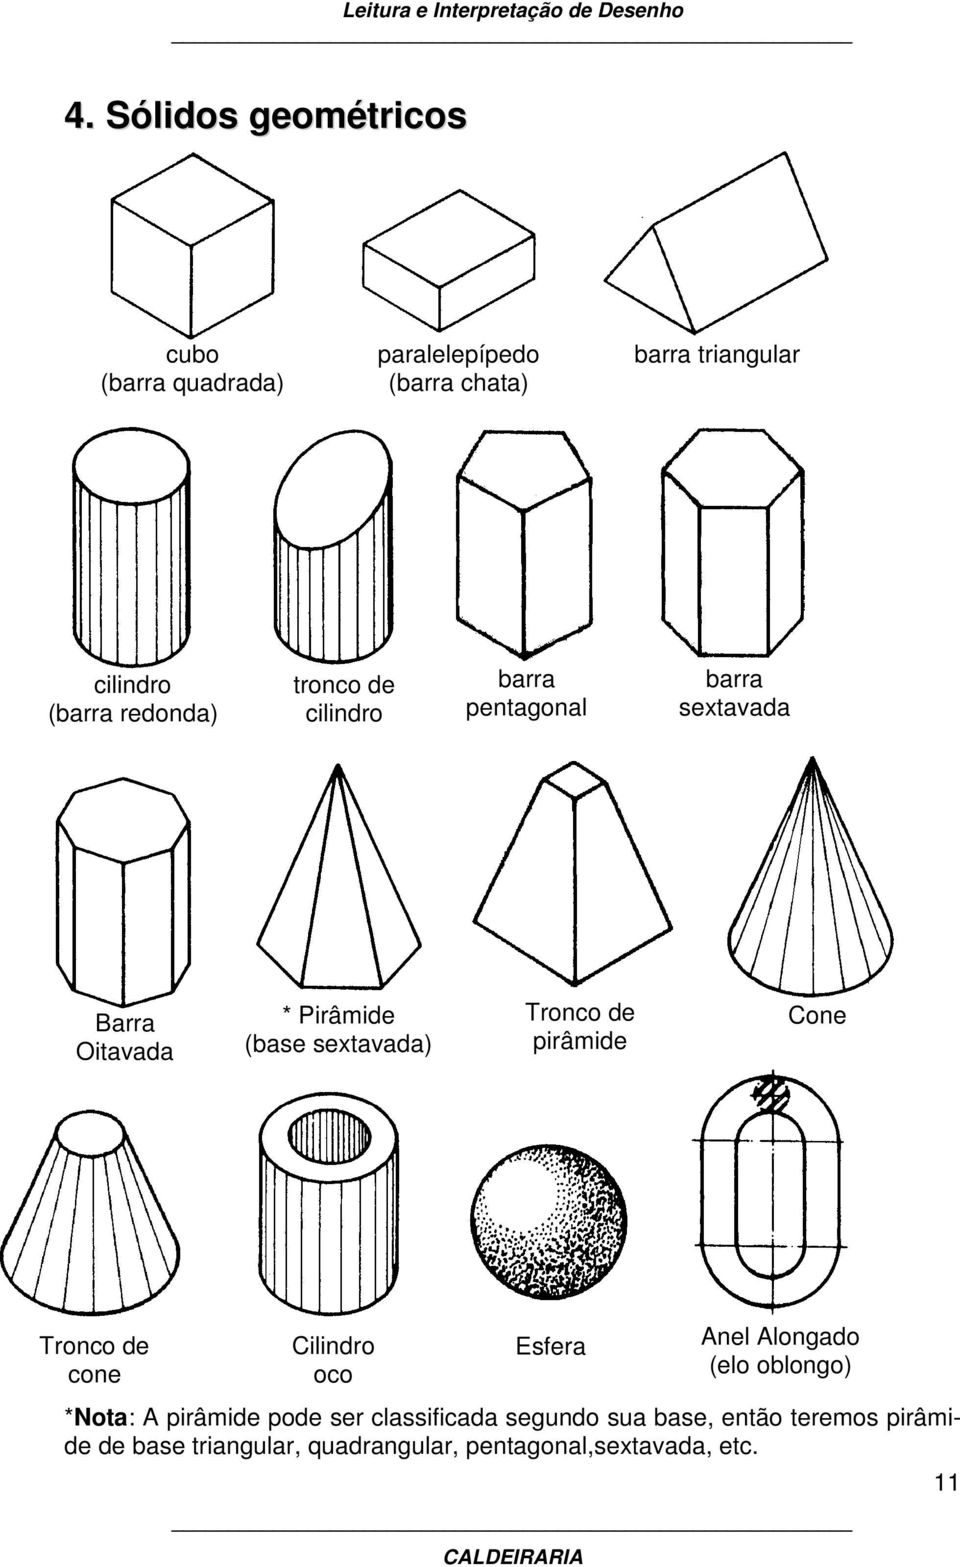 de pirâmide Cone Tronco de cone Cilindro oco Esfera (tubos) *Nota: A pirâmide pode ser classificada segundo sua